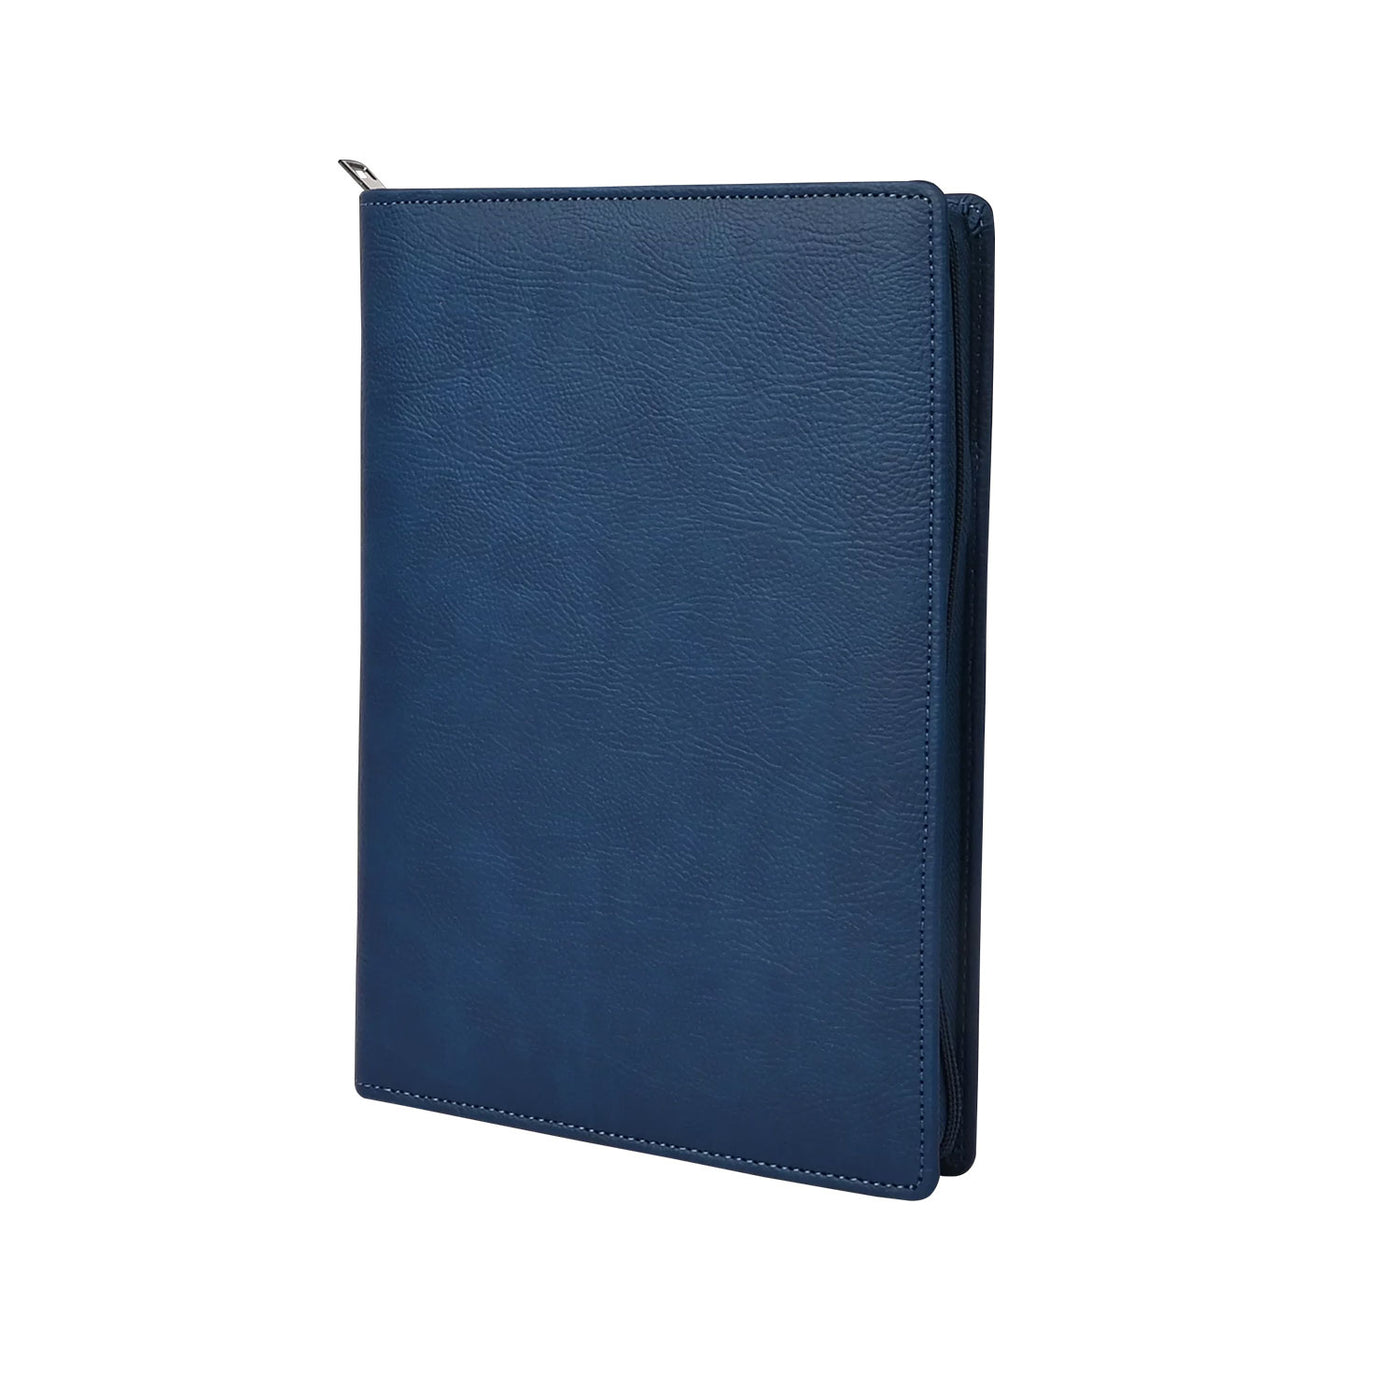 Scholar Vivant Folder Blue Notebook - A5 Ruled 2